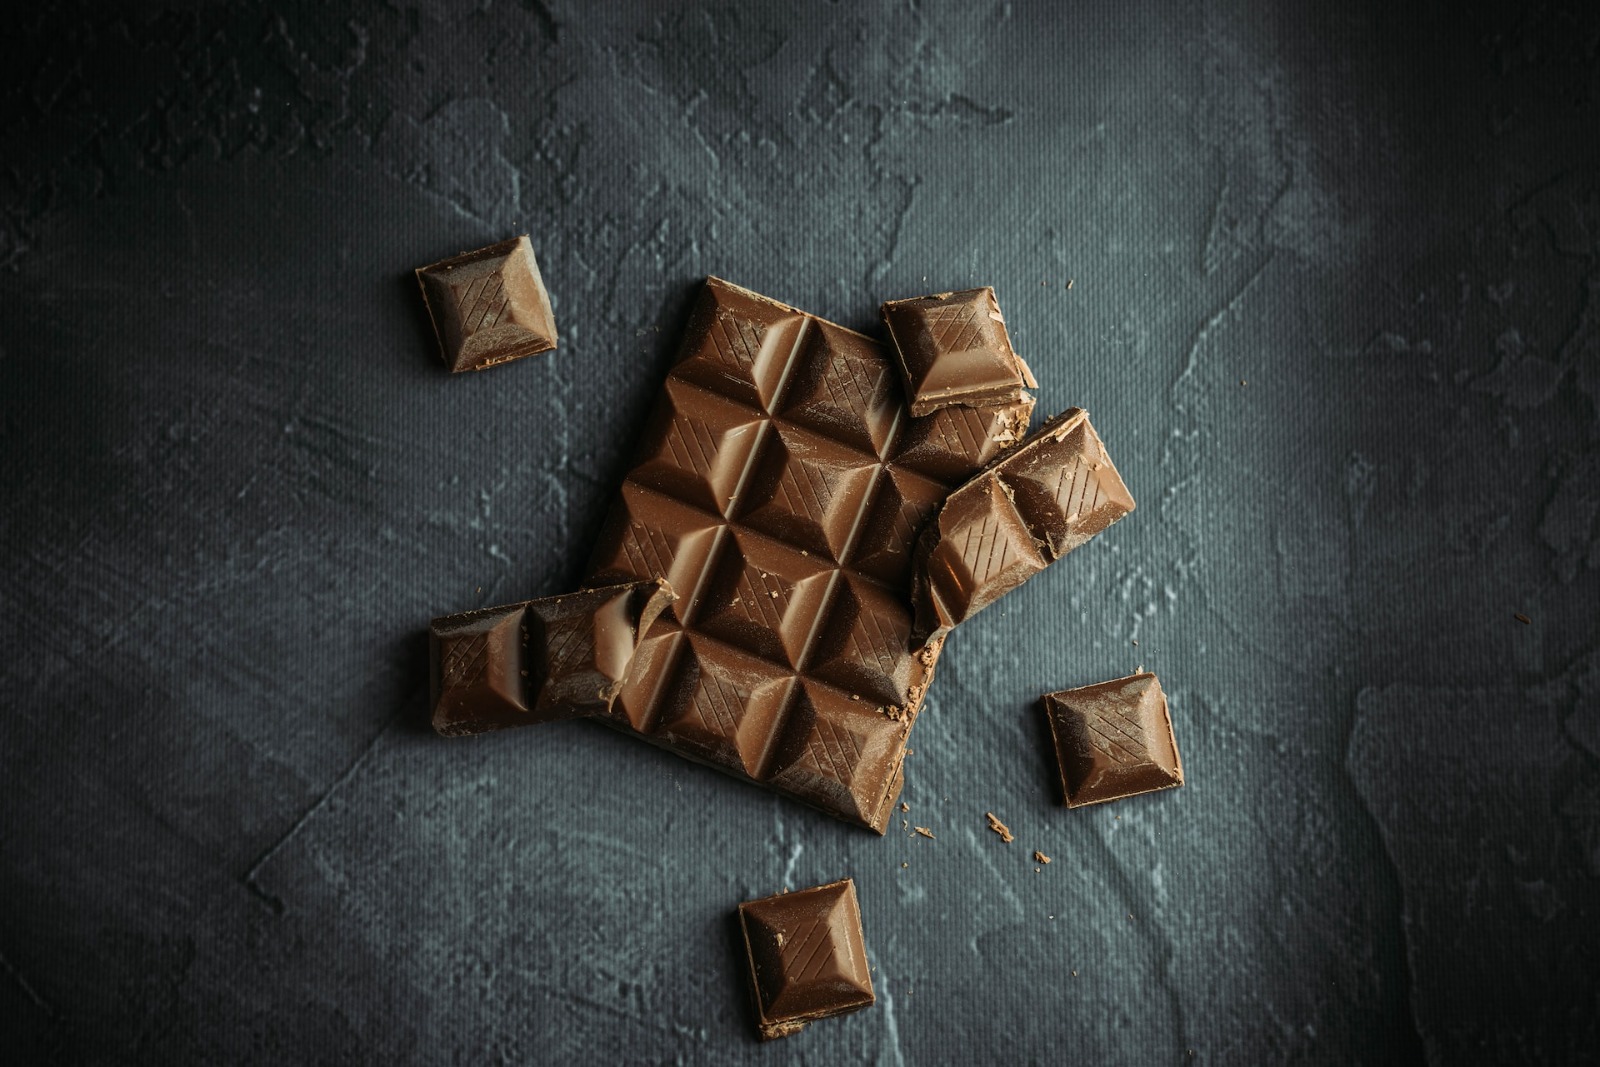 Cokelat, Makanan Manis yang Kaya Manfaat